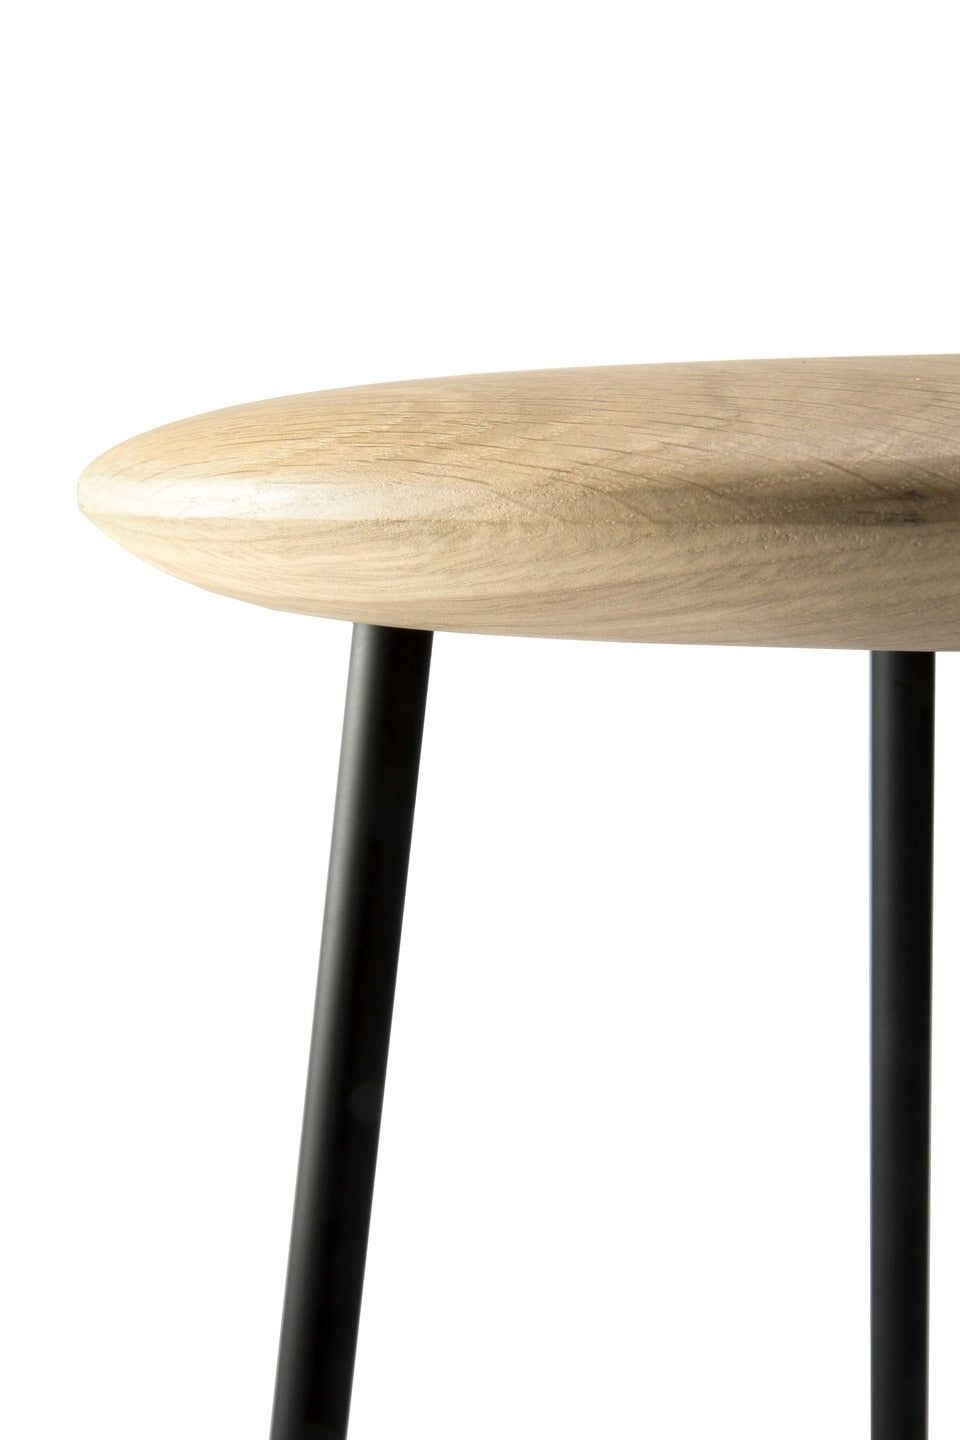 比利時原裝進口實木傢俬 - 座椅系列 - Baretto系列橡木吧台凳